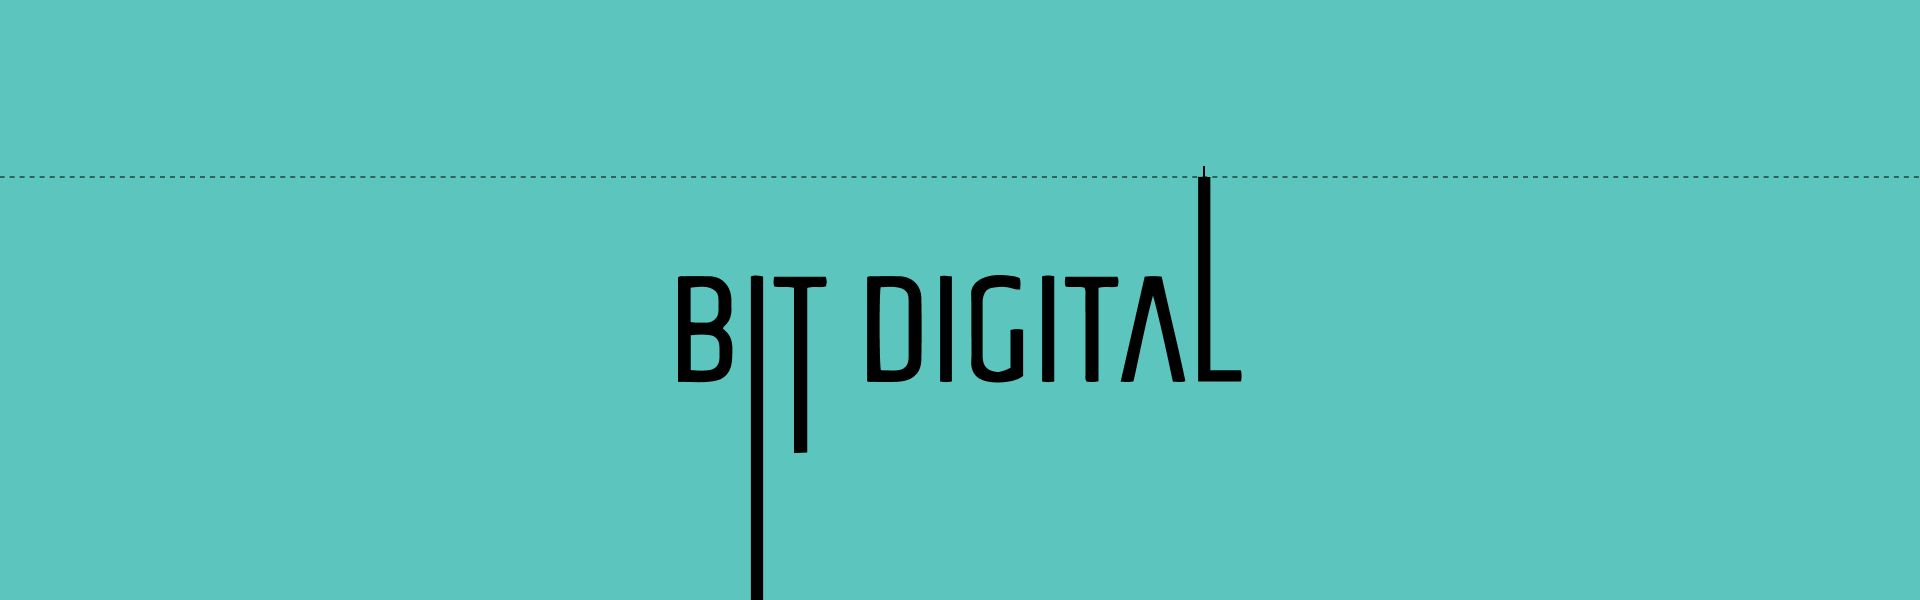 Прибуток майнера Bit Digital зріс більш ніж на третину